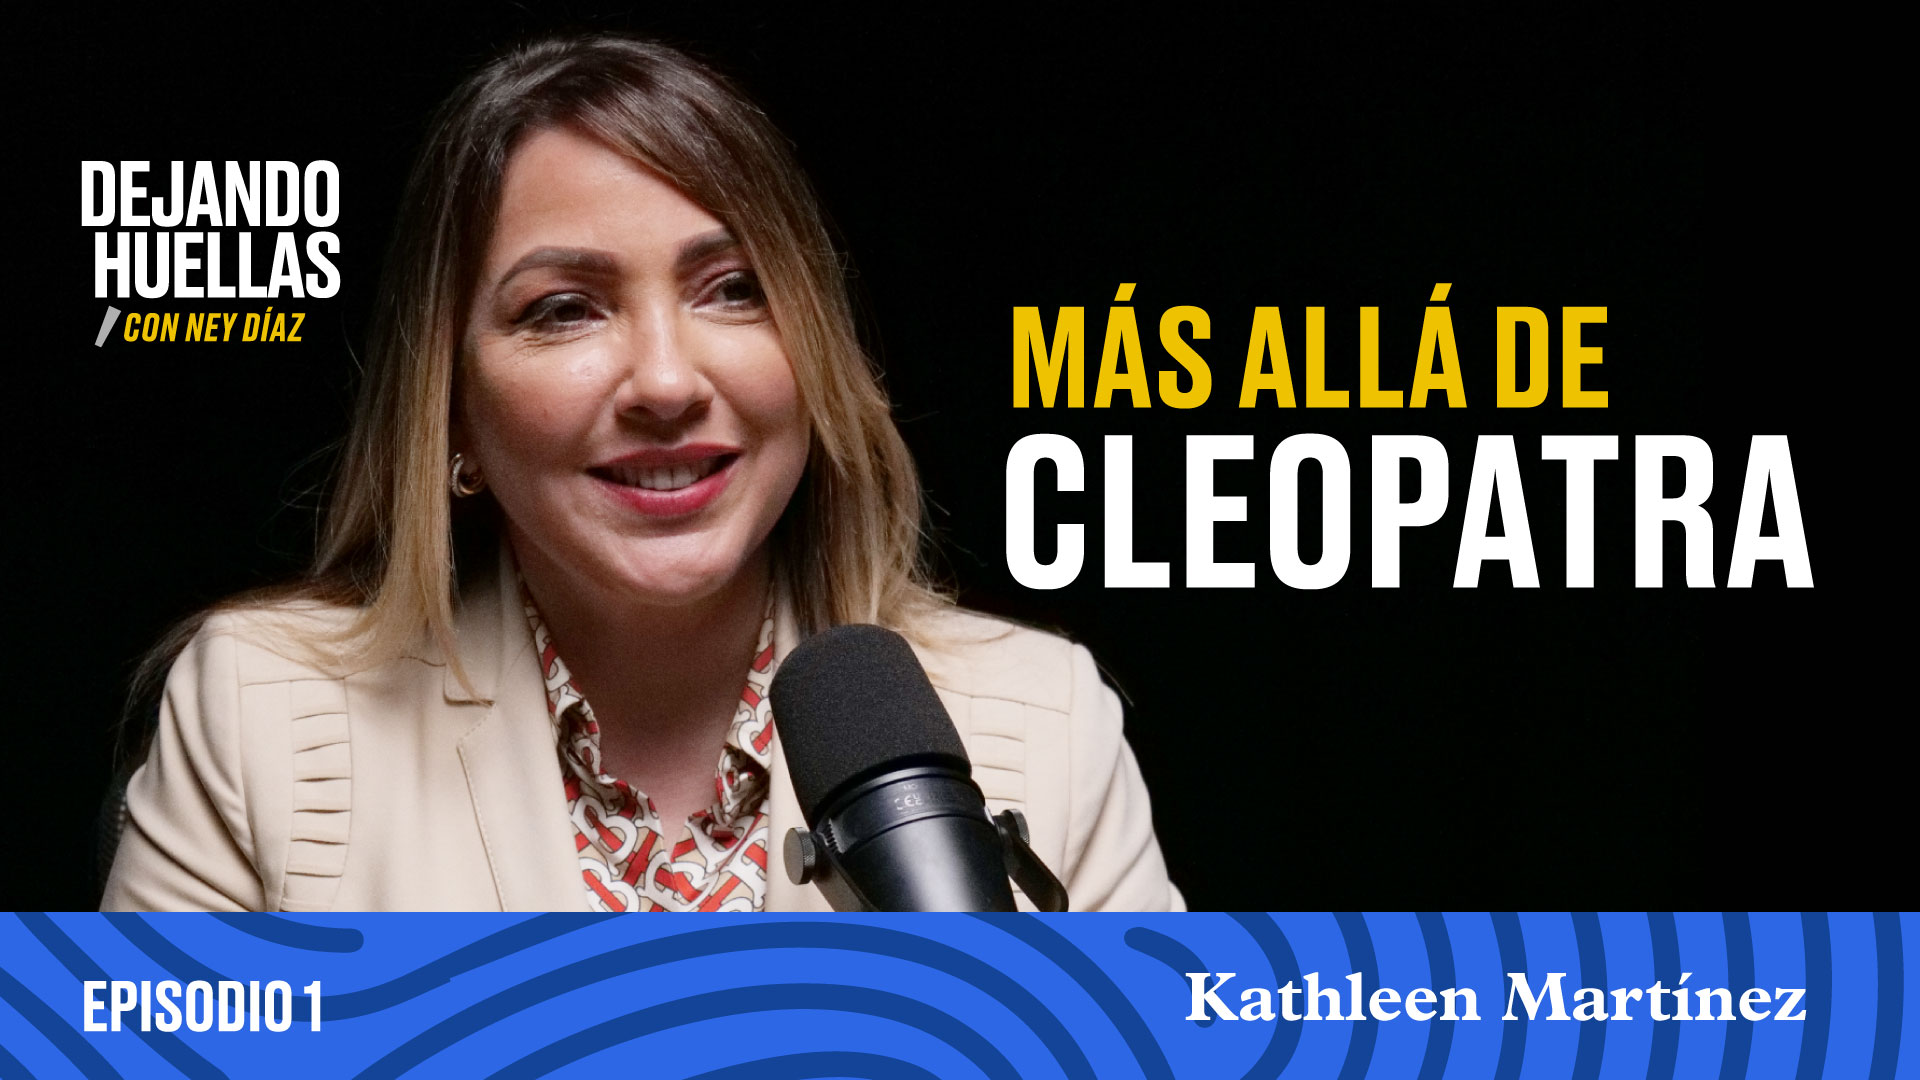 Episodio #1 - Kathleen Martínez: Más allá de Cleopatra [T1]